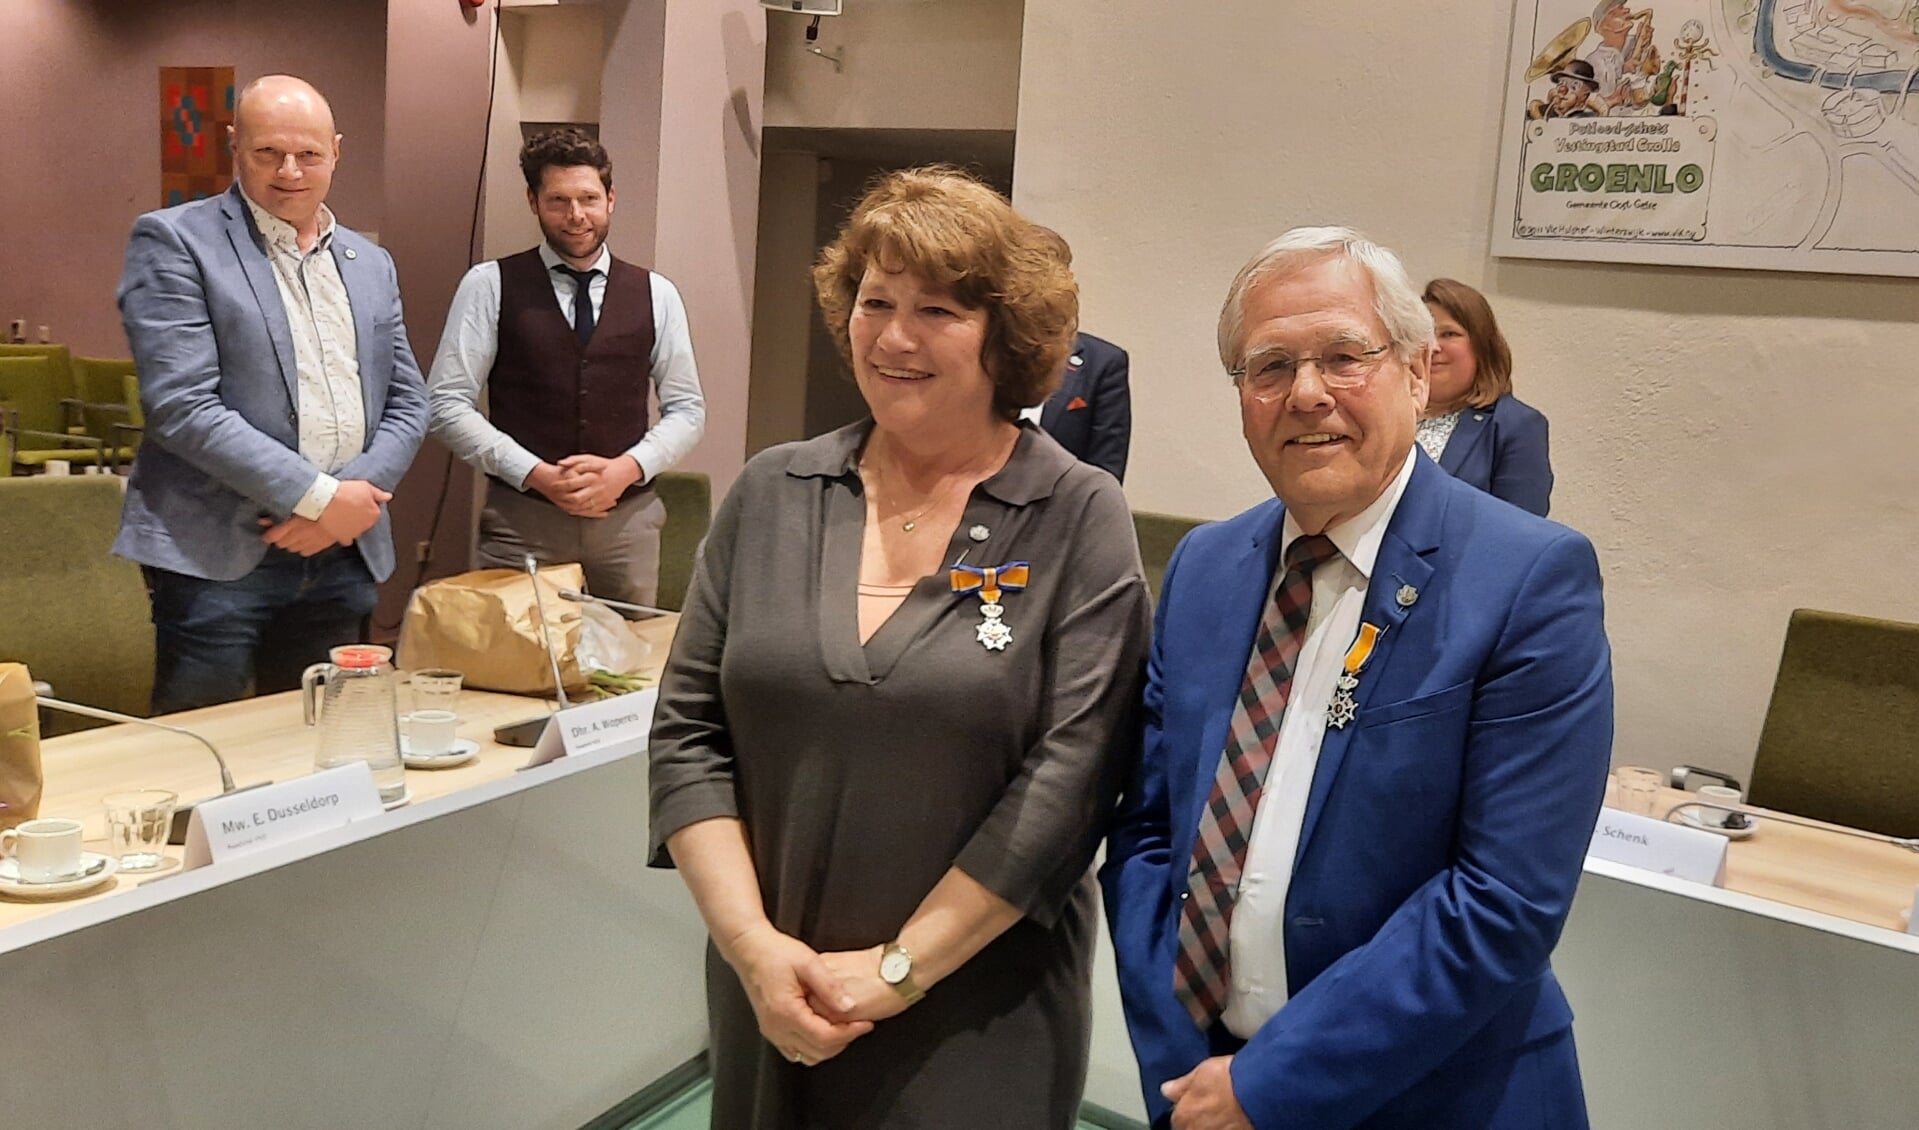 Carla Heming en Jerry van der Meulen ontvingen naast de Gemeentelijke Onderscheiding ook een Koninklijke Onderscheiding. Foto: Kyra Broshuis